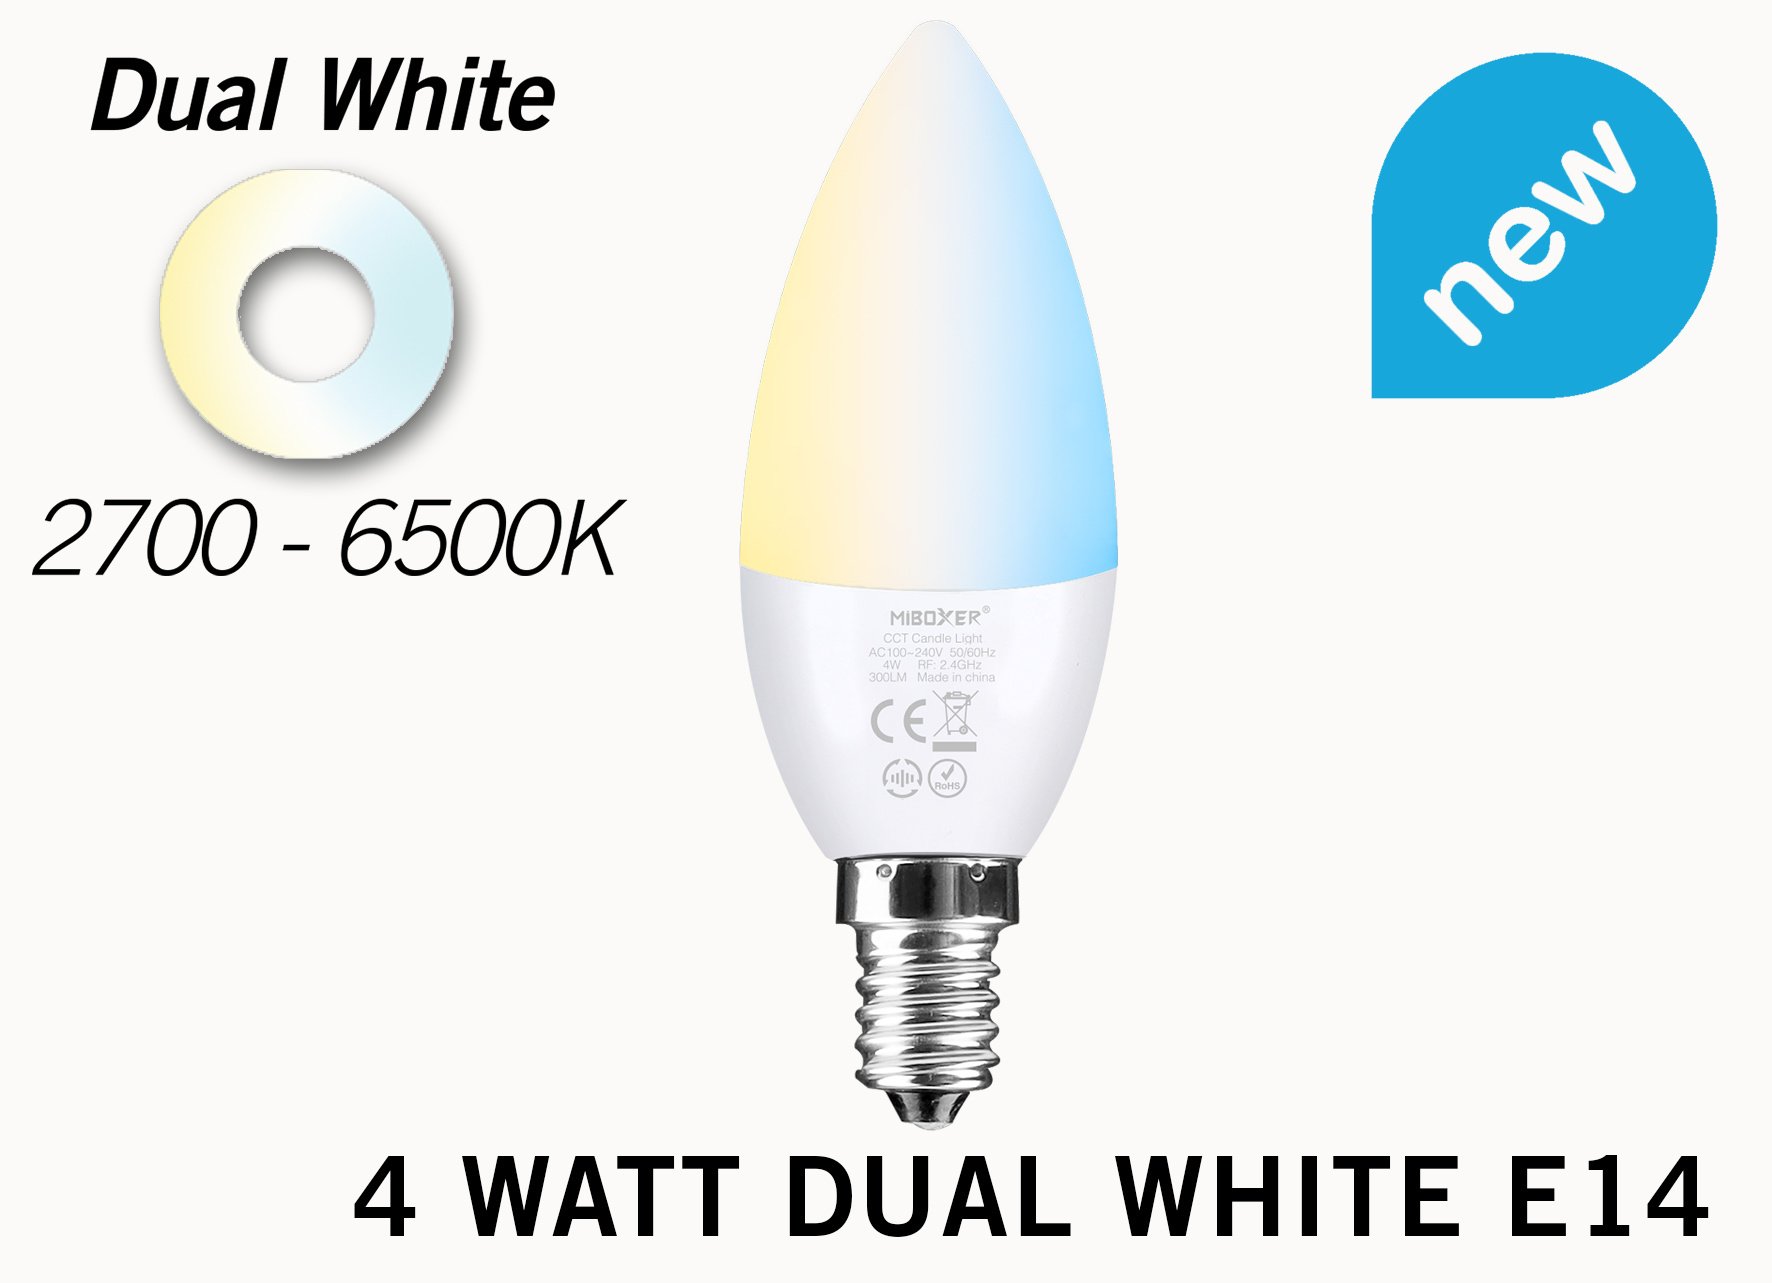 Mi·Light Miboxer-Mi-Light Kaarslamp 4W Dual White E14 Wifi LED Lamp